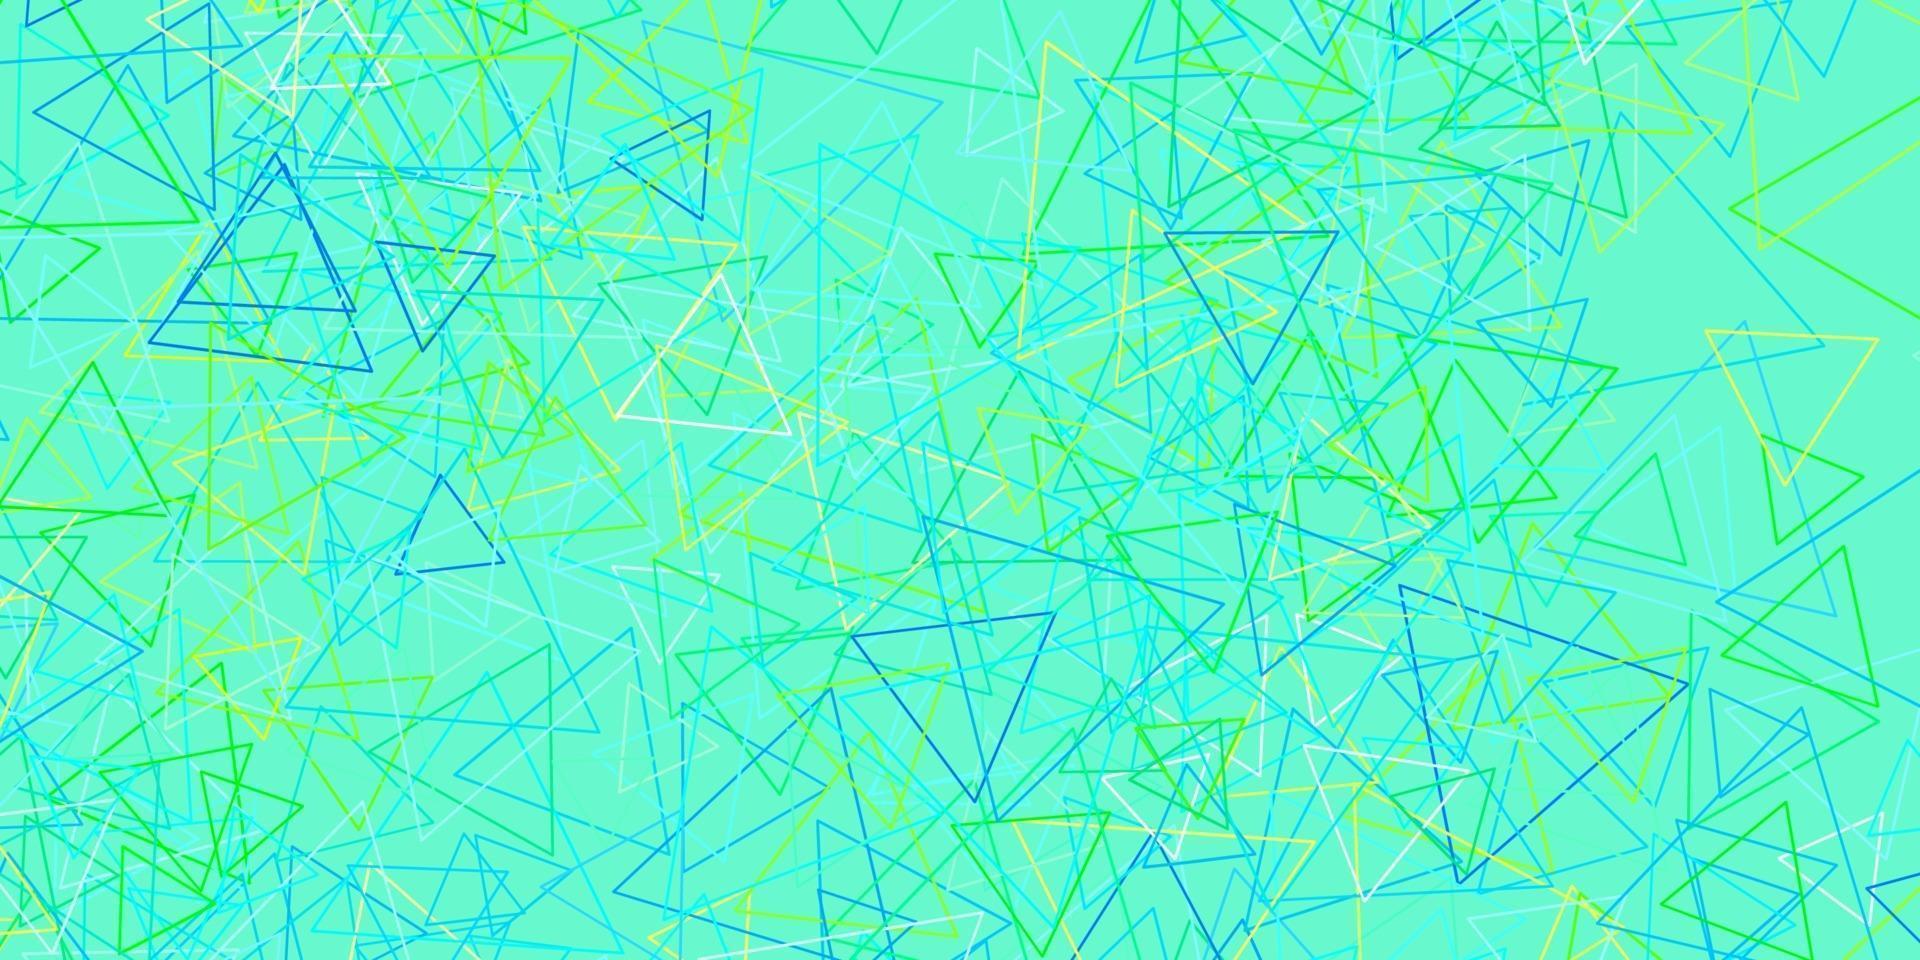 ljusblå, grön vektorlayout med triangelformer. vektor